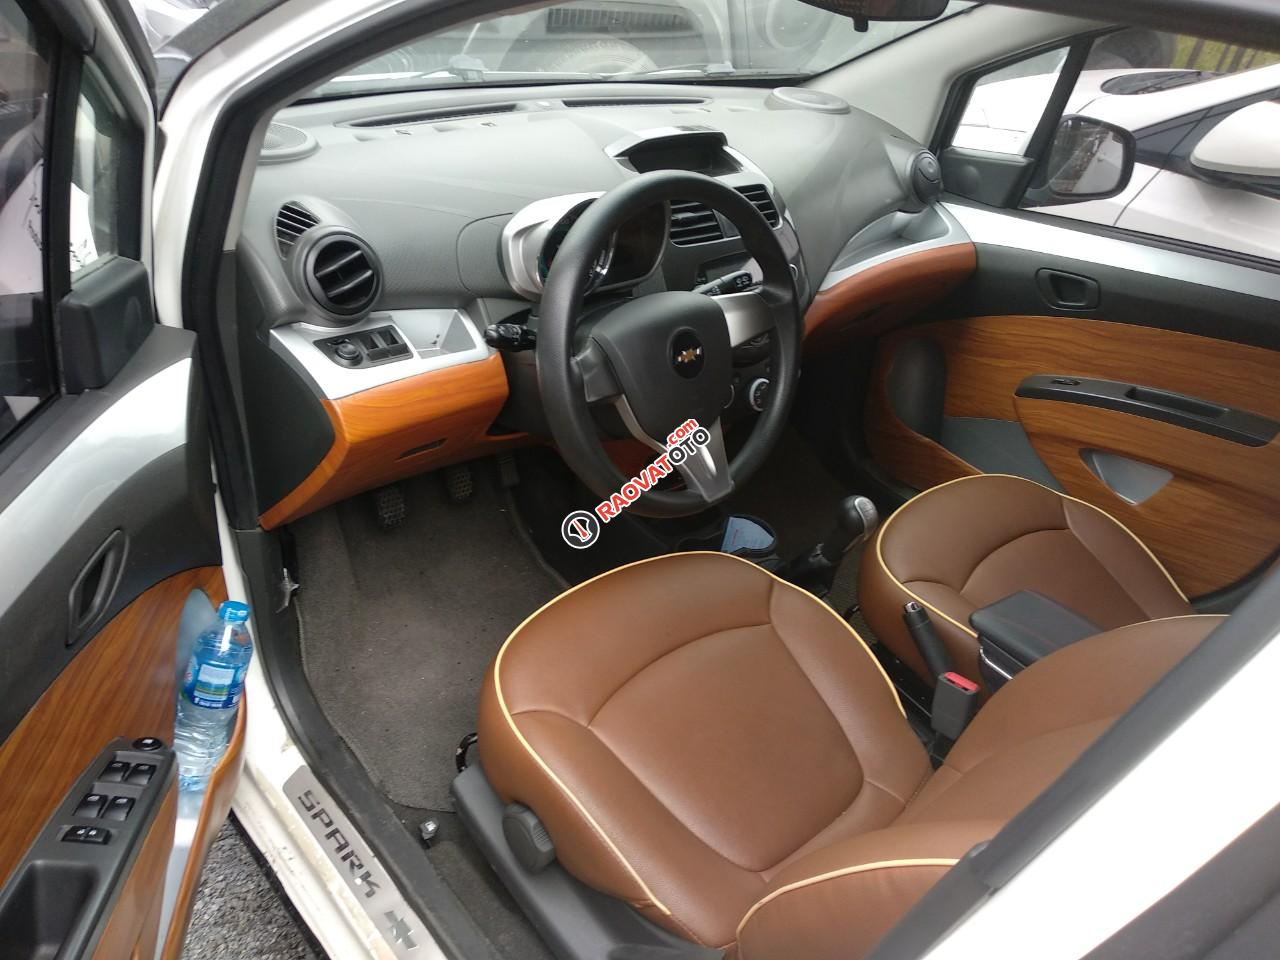 Chevrolet Spark LT 2016 biển 34A. ODO 14 vạn km-4